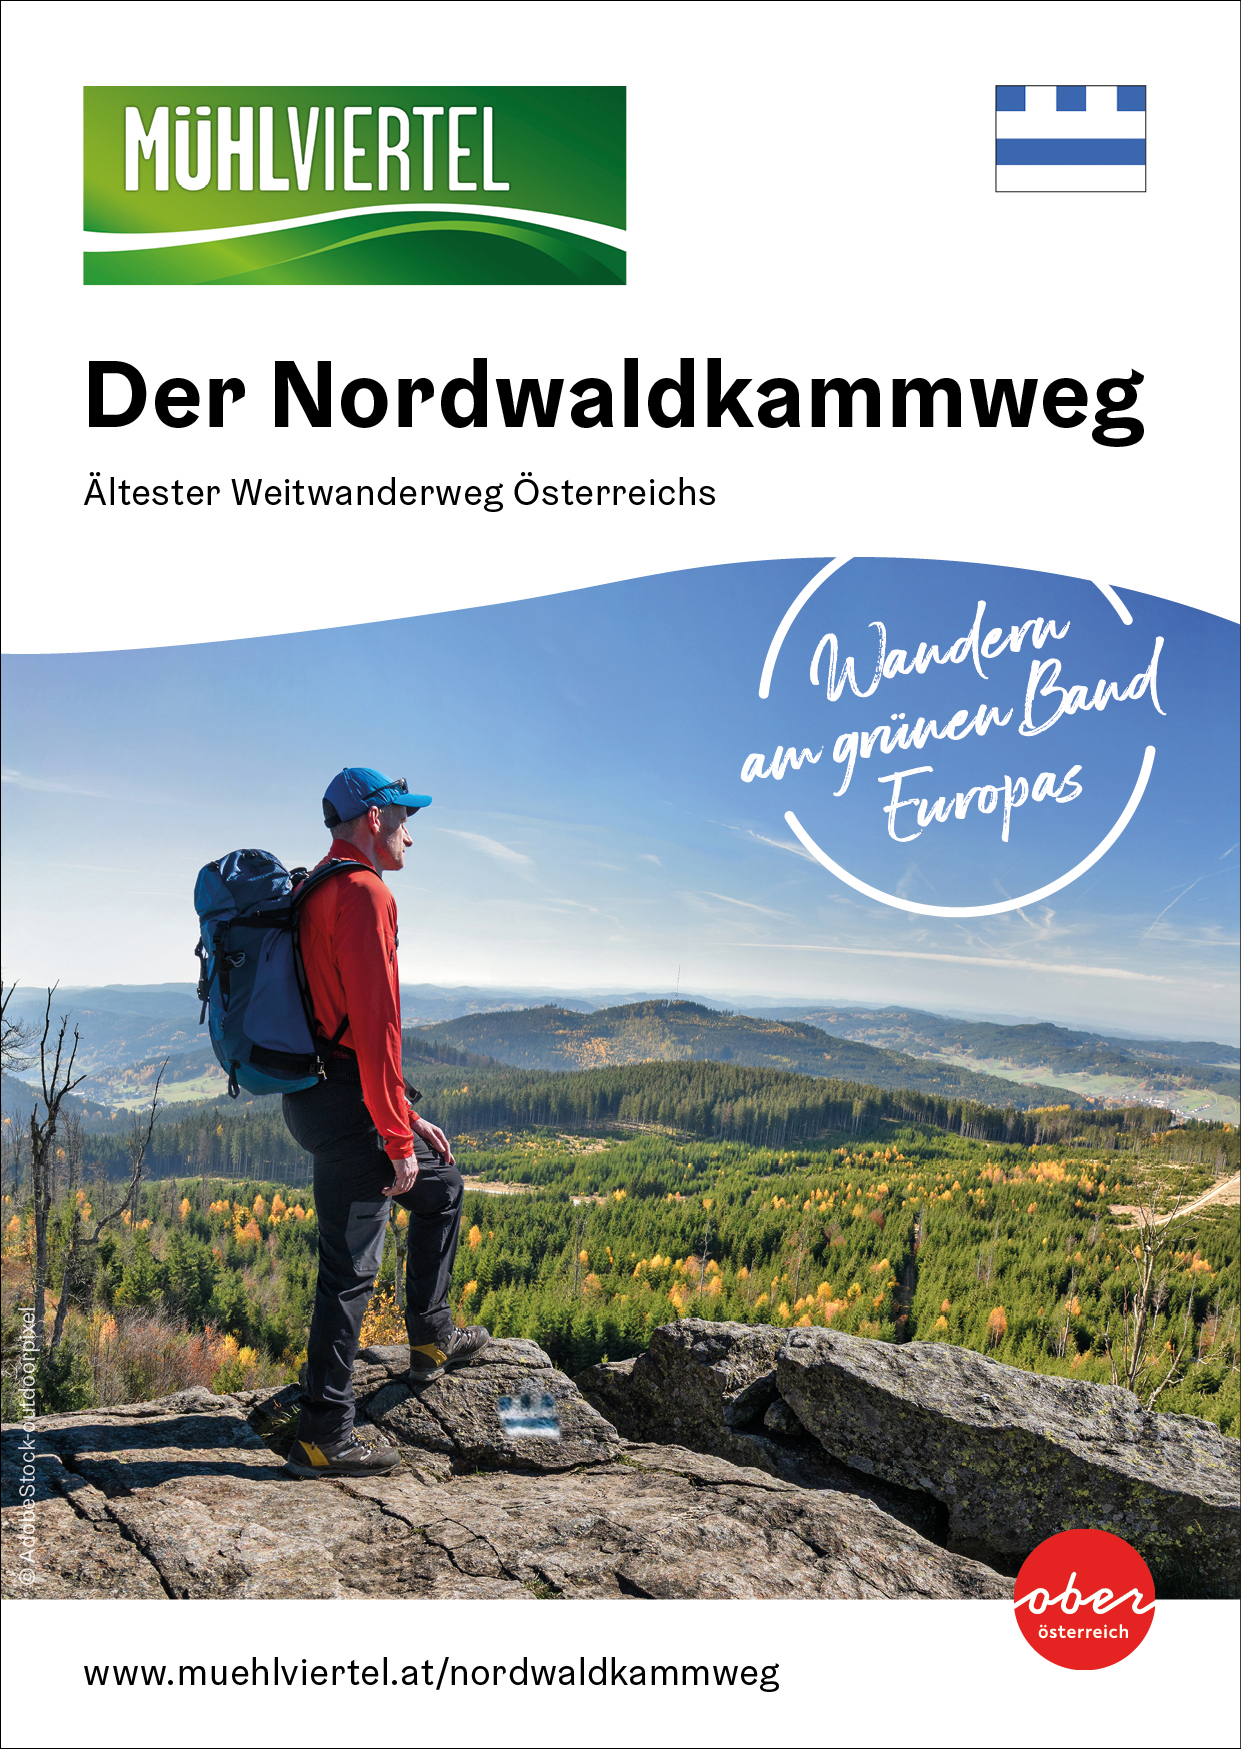 Die Titelseite der Wanderbroschüre des Nordwaldkammweg